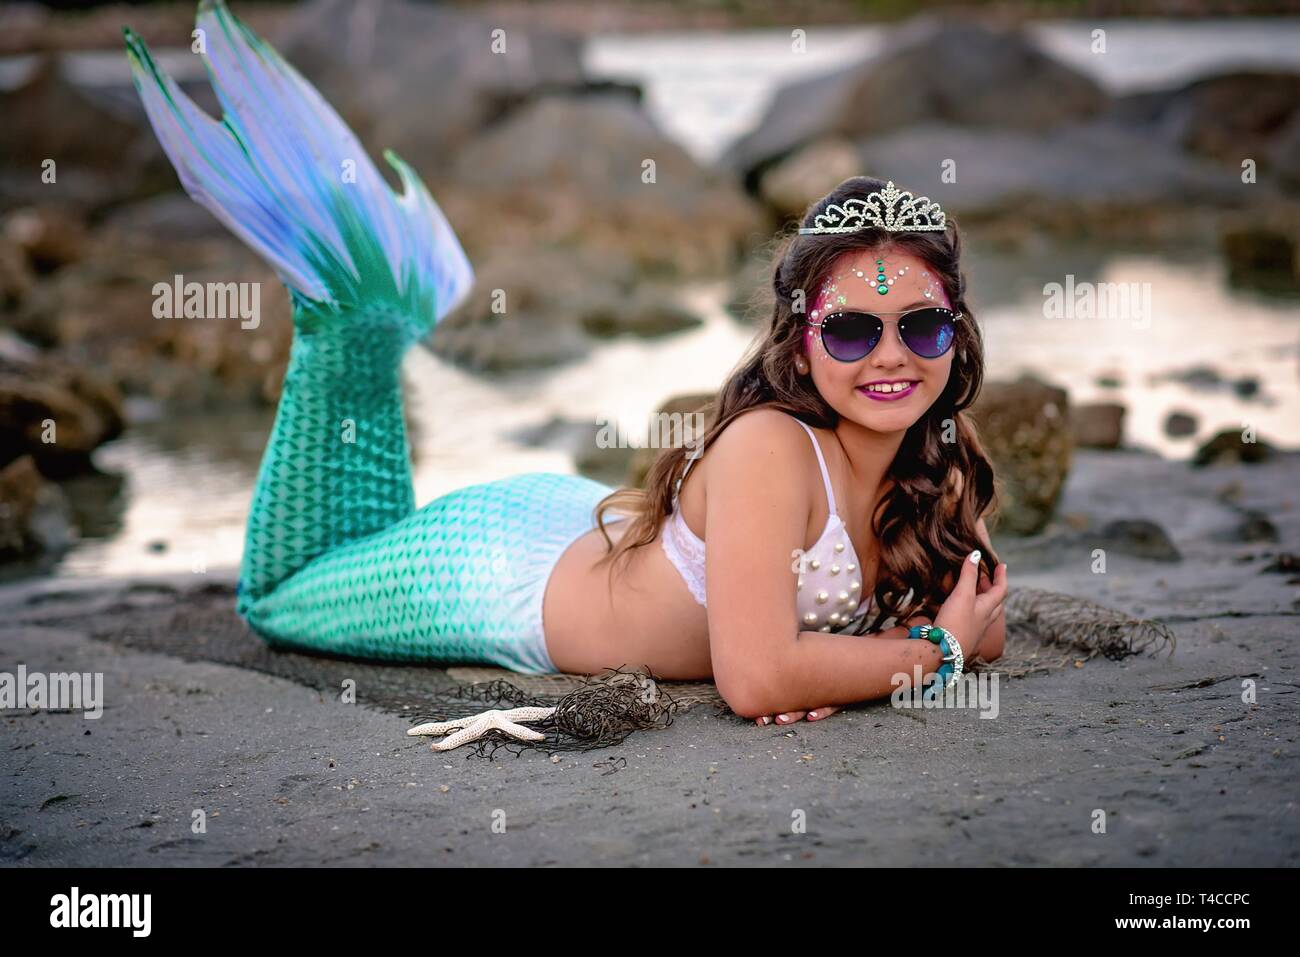 Tween mermaid on rocks Stock Photo